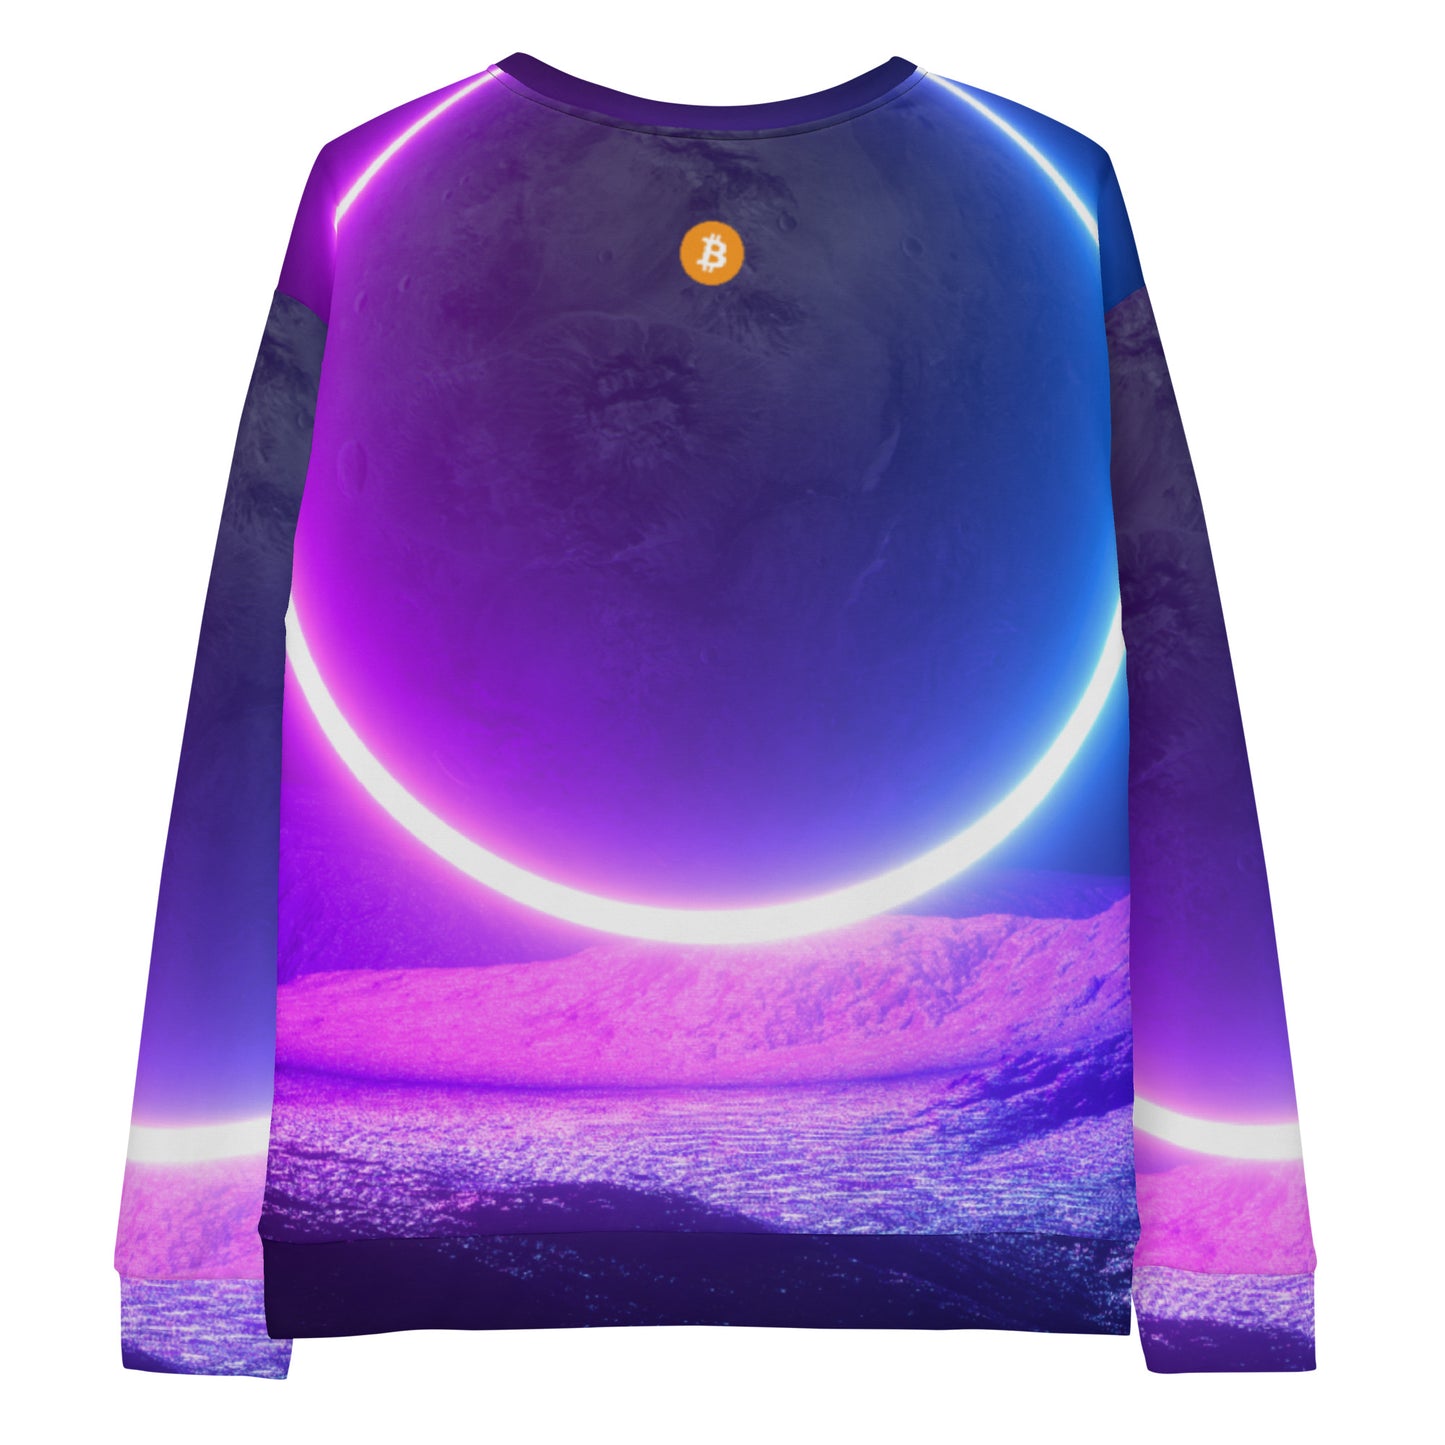 Bitcoin Whale Sweatshirt